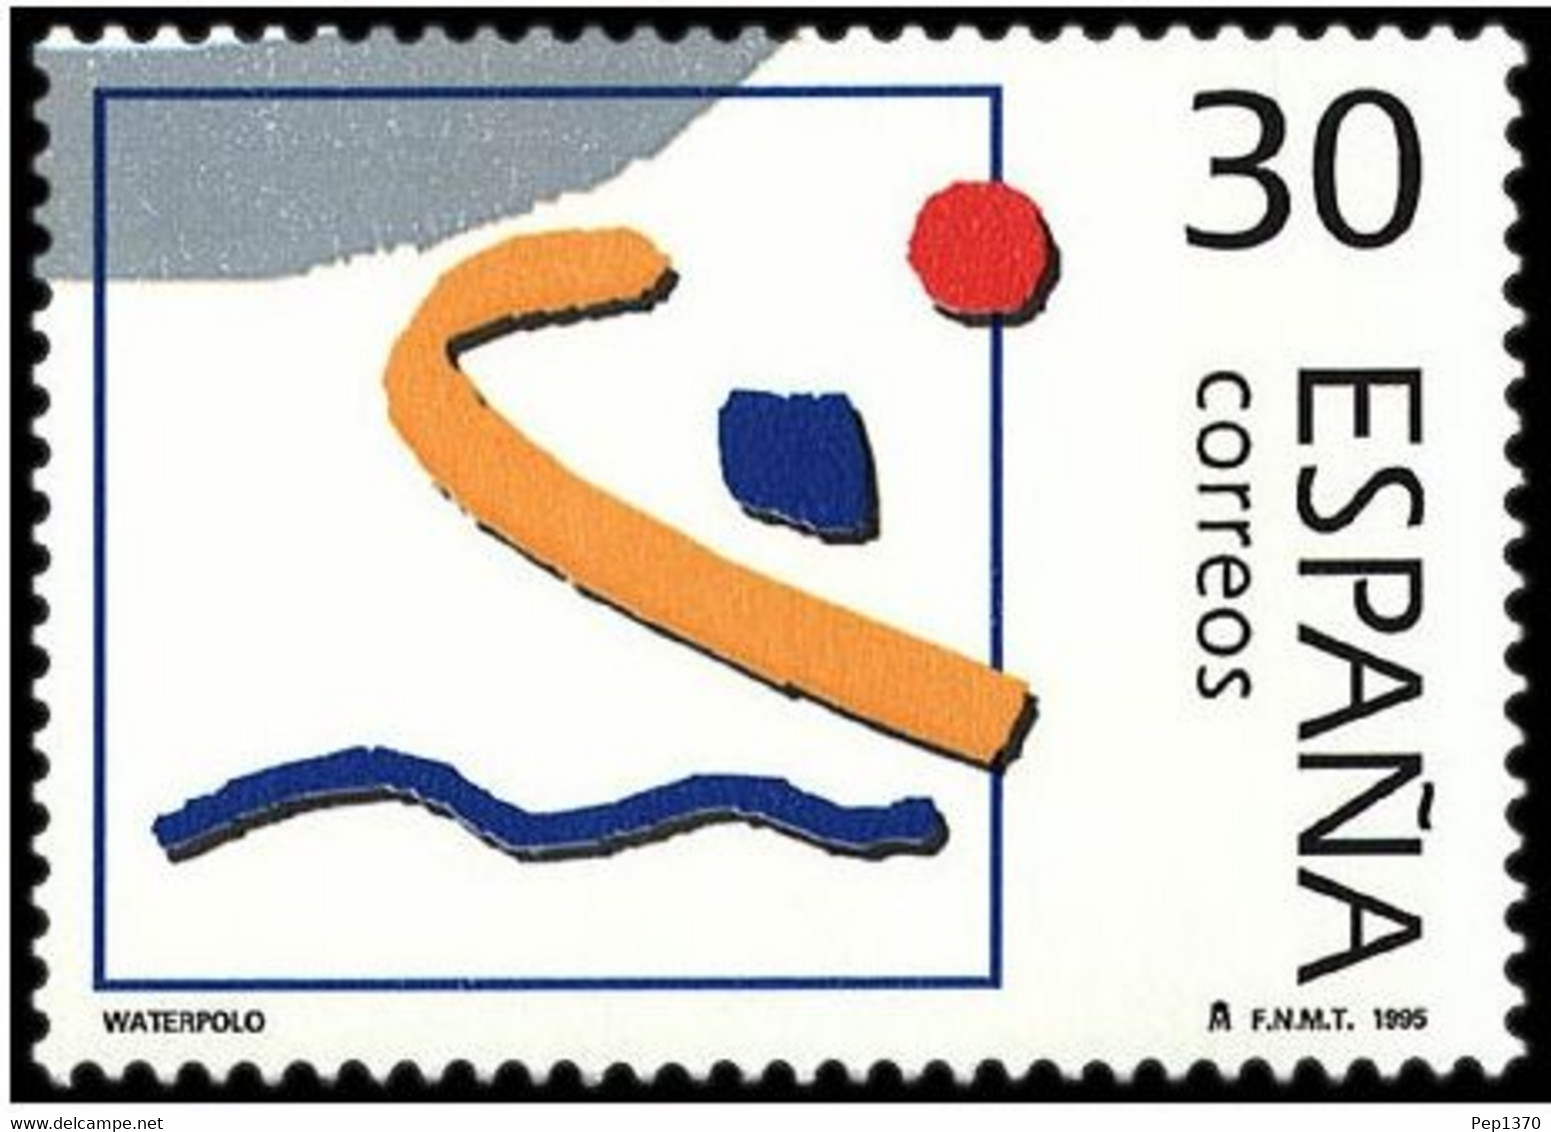 ESPAÑA 1995 - OLIMPICOS DE PLATA - WATERPOLO - WATER POLO  - EDIFIL Nº 3377** - Wasserball